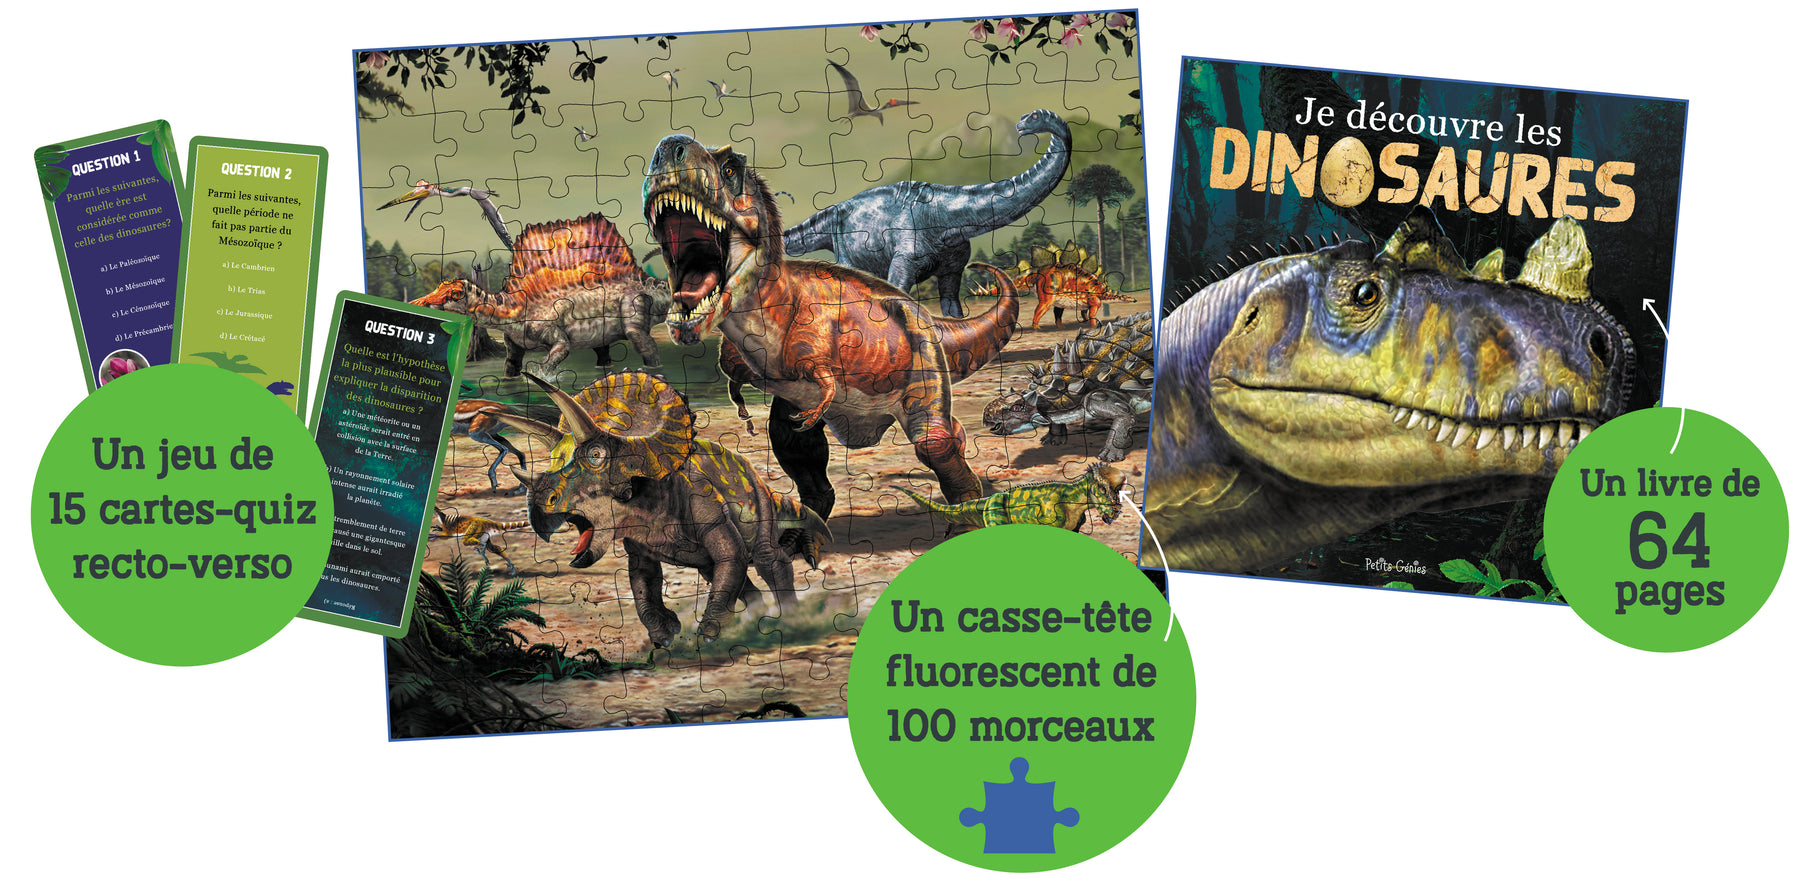 Je découvre les dinosaures, Histoire et géographie